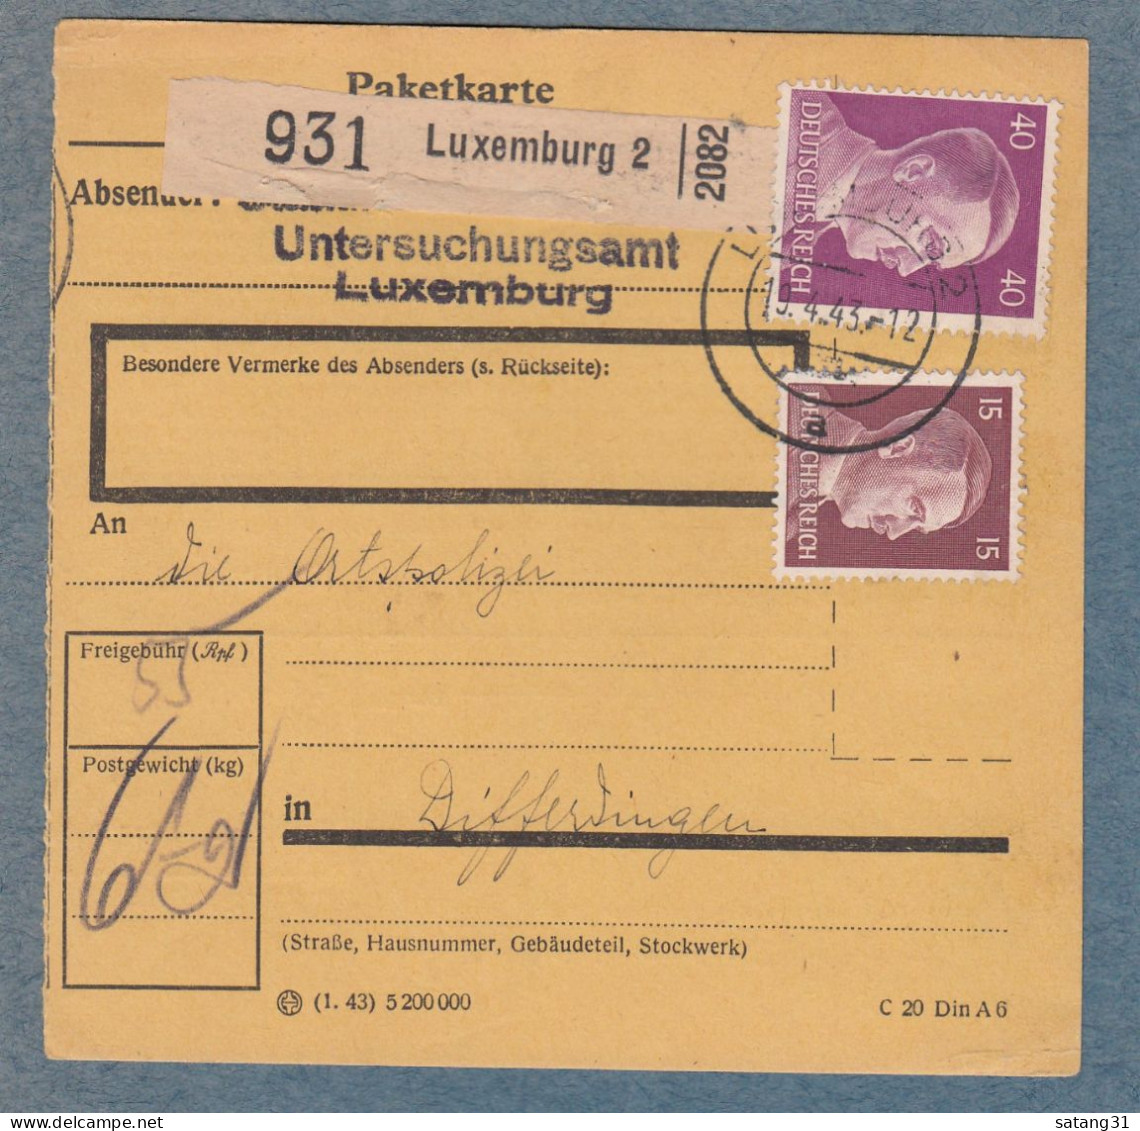 PAKETKARTE AUS DEM UNTERSUCHUNGSAMT IN LUXEMBURG AN DIE ORTSPOLIZEI IN DIFFERDINGEN. - 1940-1944 Ocupación Alemana